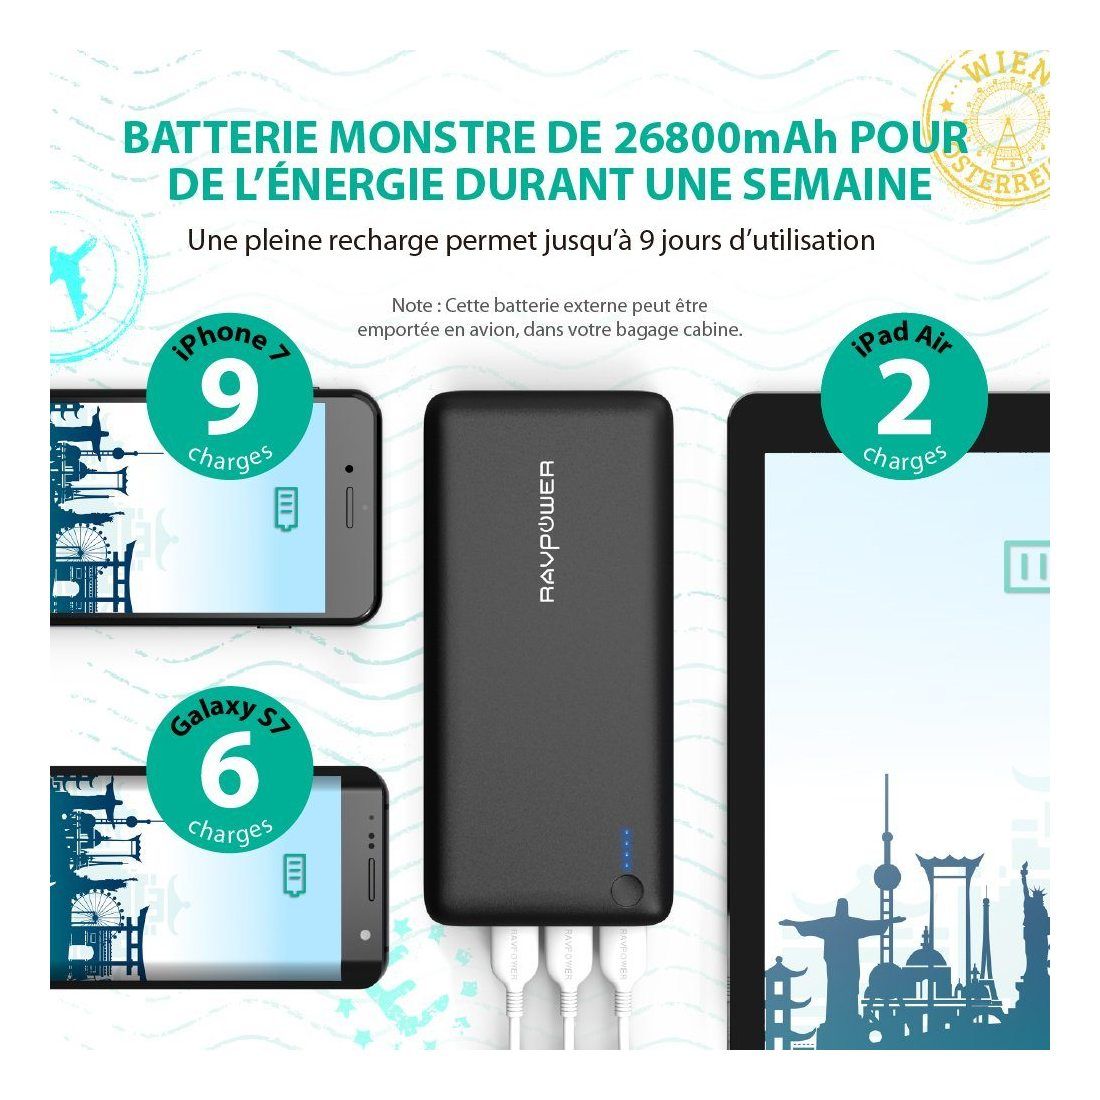 RAVPower Batterie Externe 26800mAh 3 Ports USB, Chargeur Portable Li-polymère Autorisé en Avion (Sortie Totale 5.5A / Entrée 